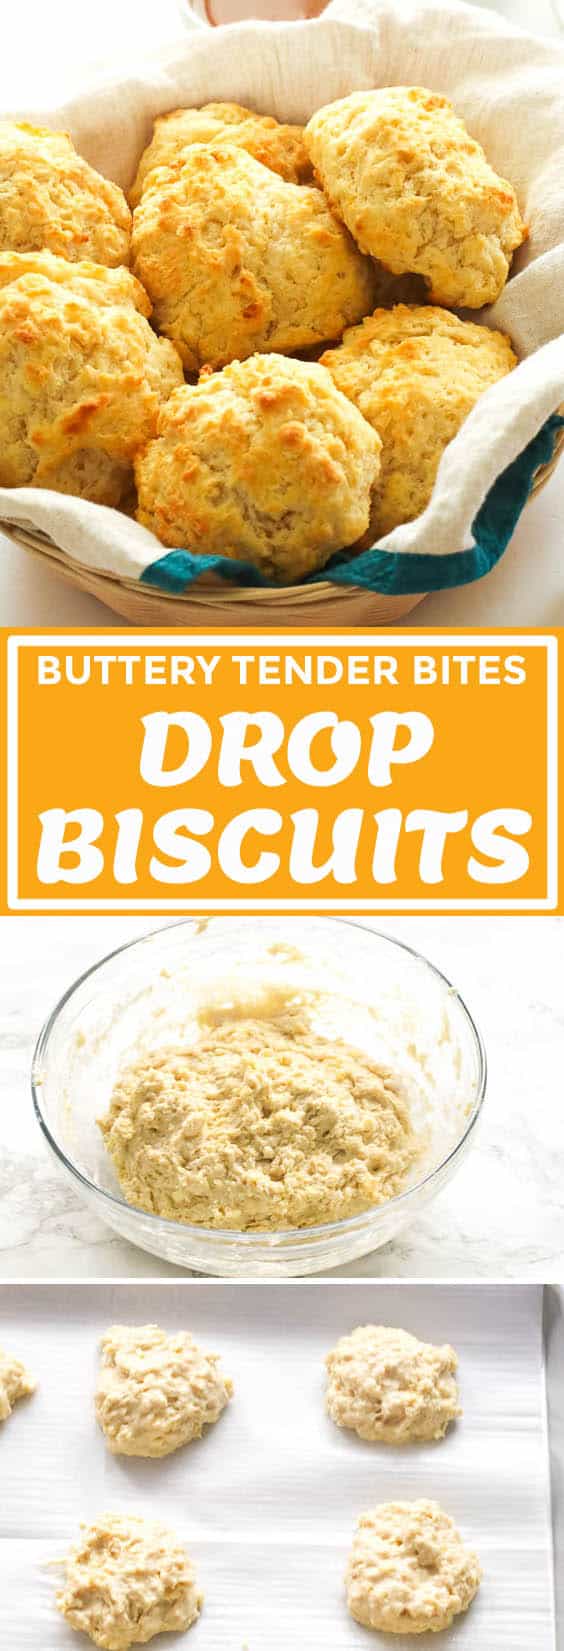 Drop Biscuits